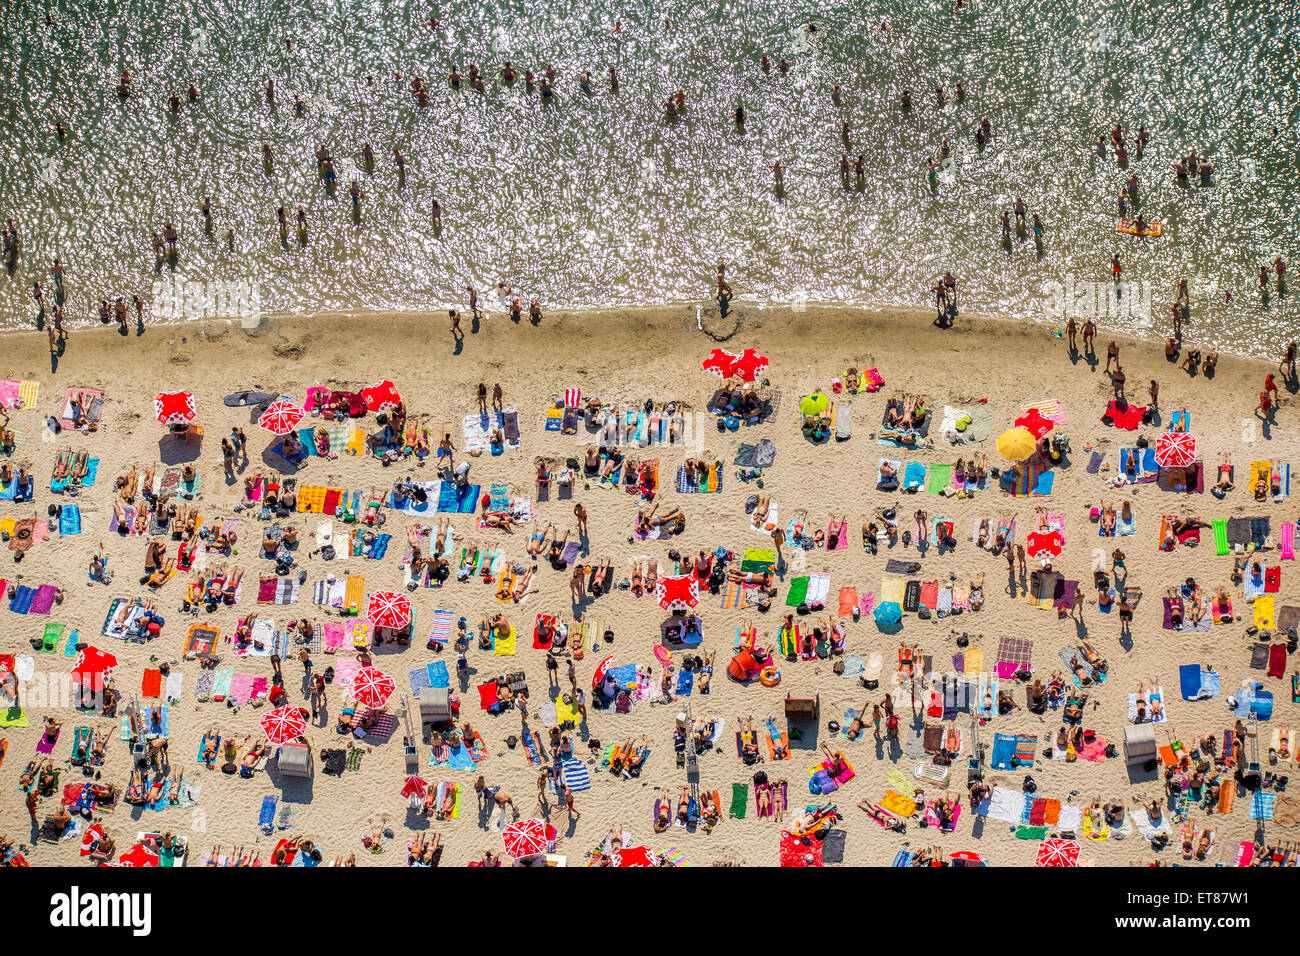 Sundown Beach, bathers on towels at Escher lake, lake in Cologne, Rhineland, North Rhine-Westphalia, Germany Stock Photo